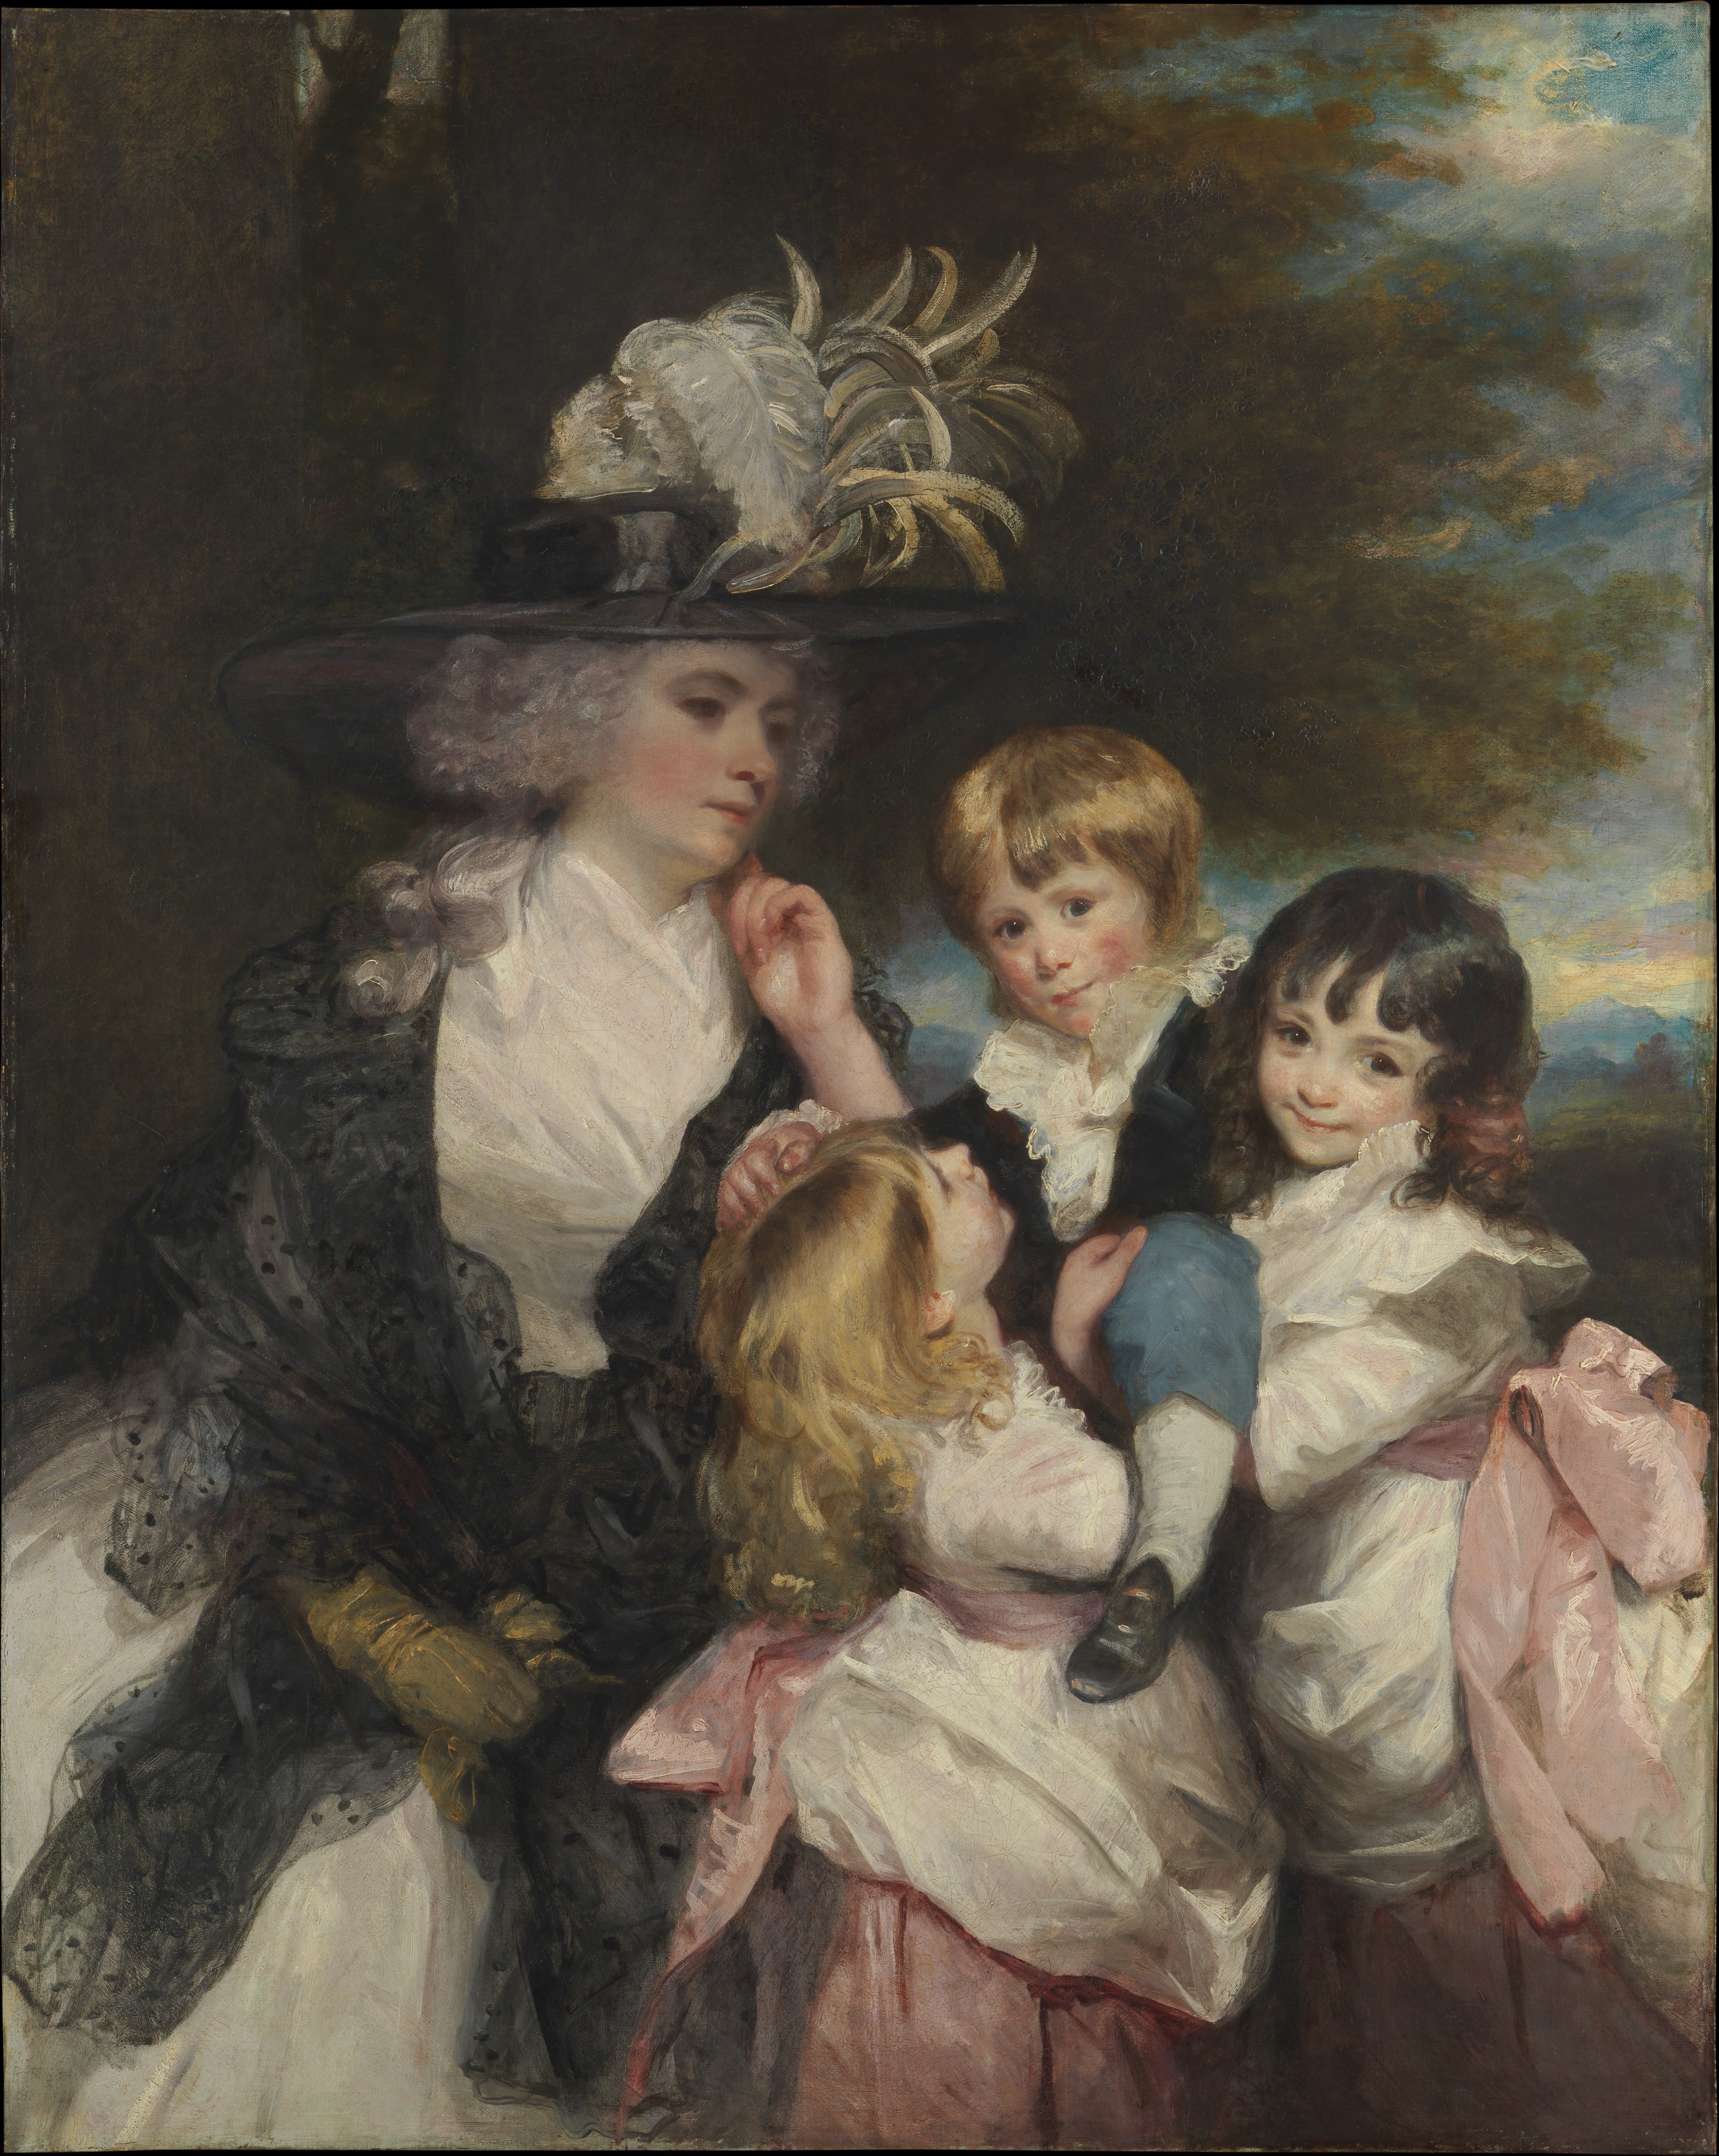 史密斯夫人 (夏洛特·德拉瓦爾) 與她的孩子們 (喬治亨利, 露易莎, 和夏洛特) by Joshua Reynolds - 西元1787 - 132 x 147 公分 